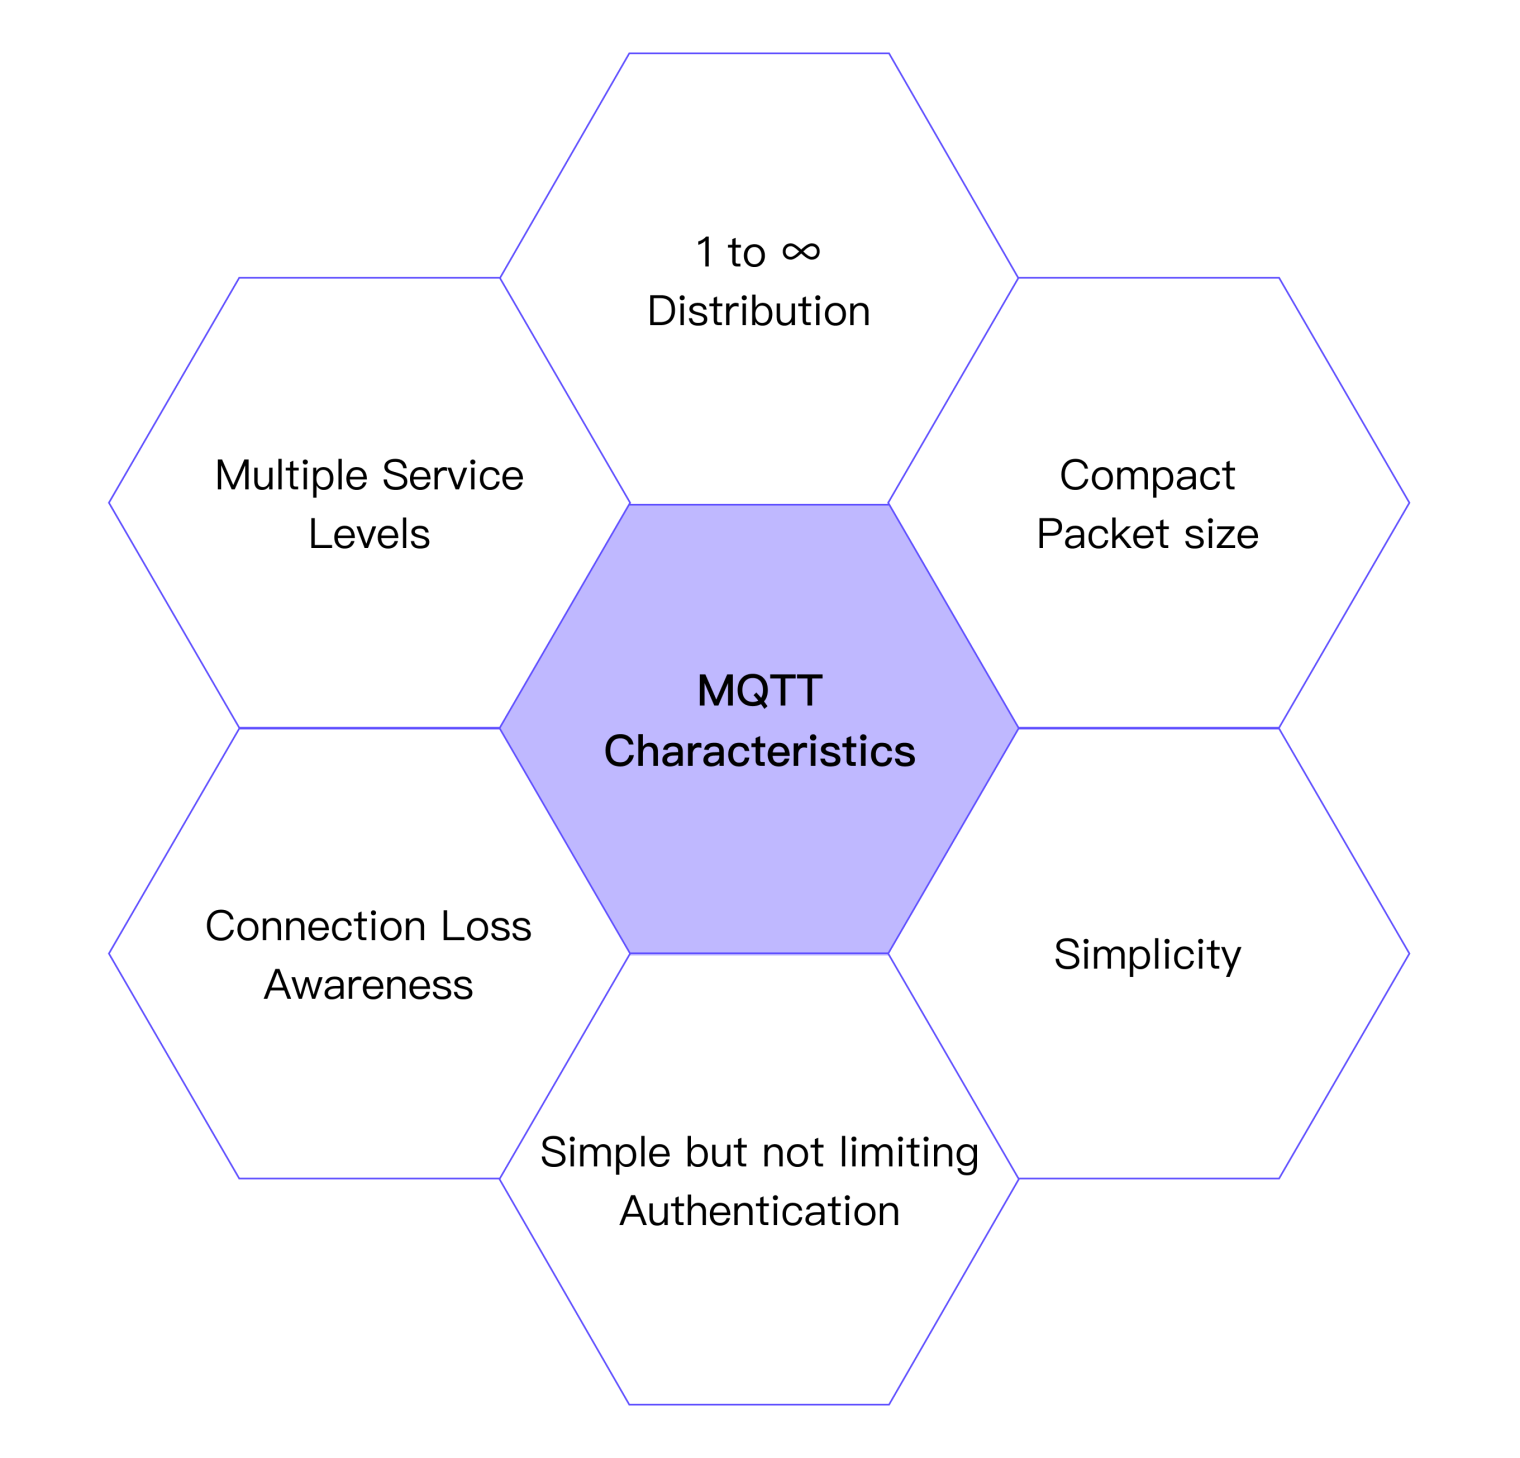 MQTT Characteristics